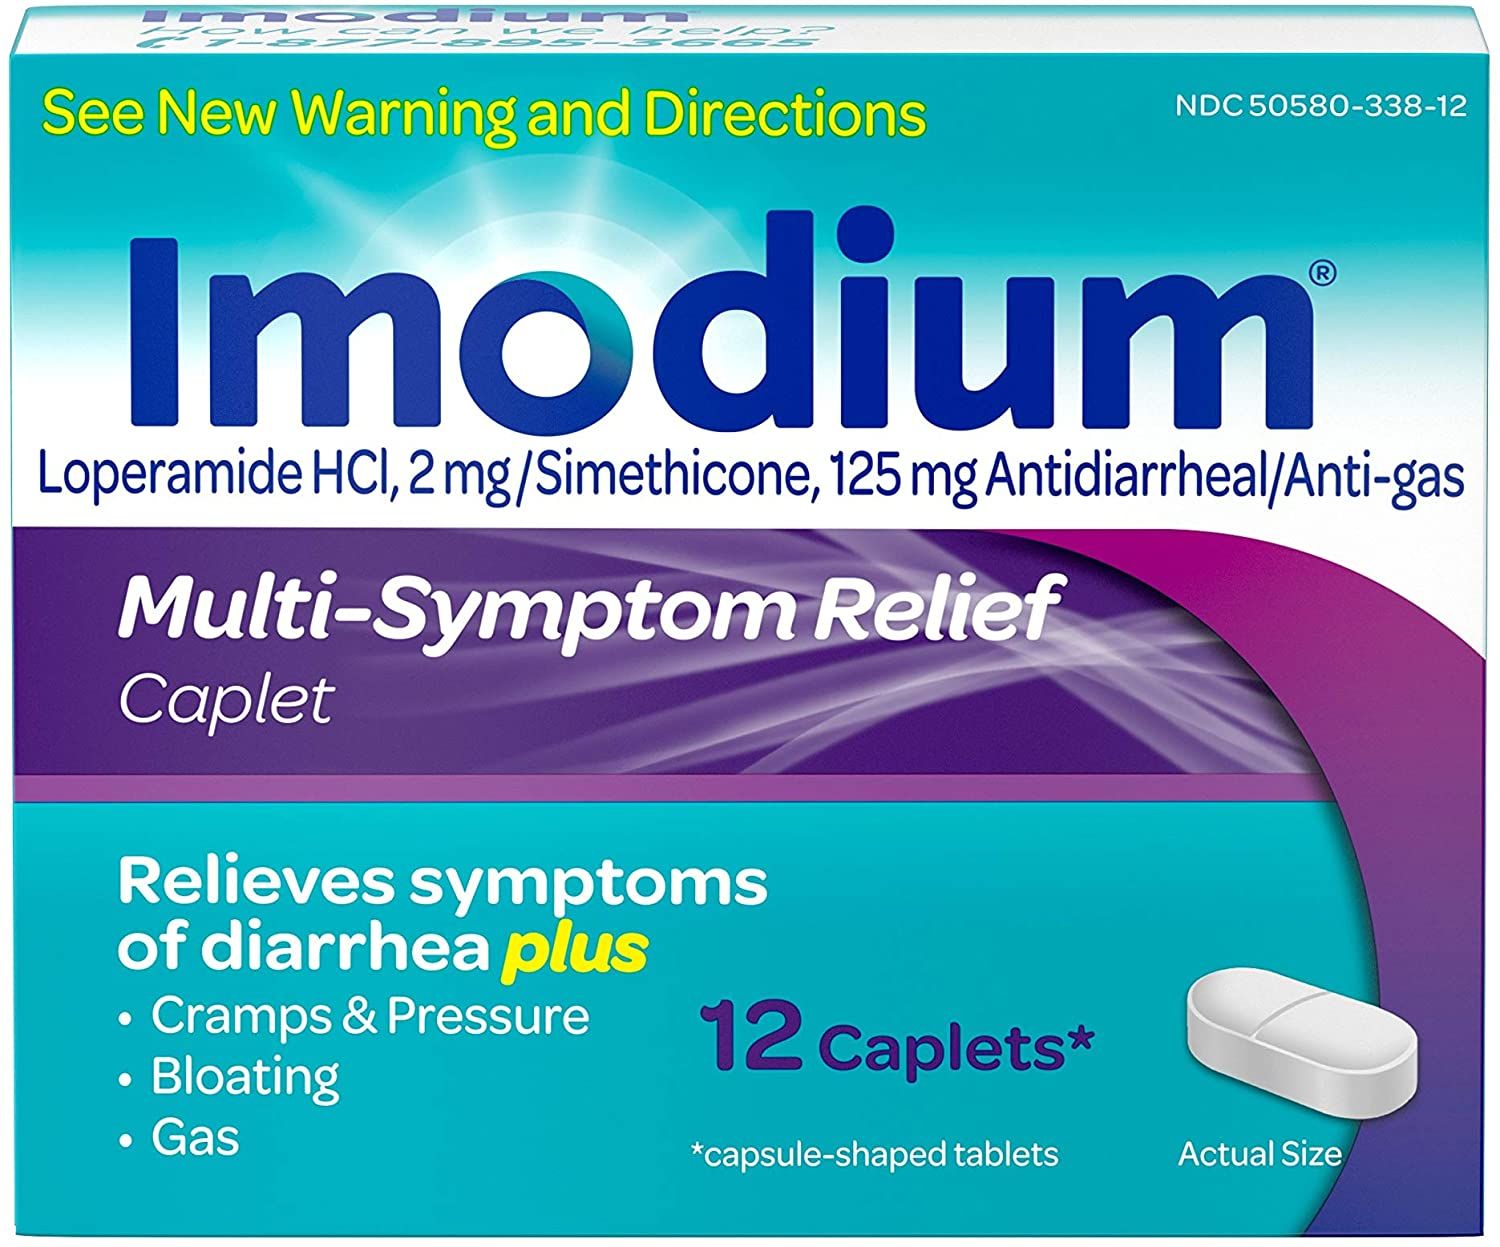 DISCImodium Multi-Symptom Relief Anti-Diarrheal Medicine Caplets - 12 ct